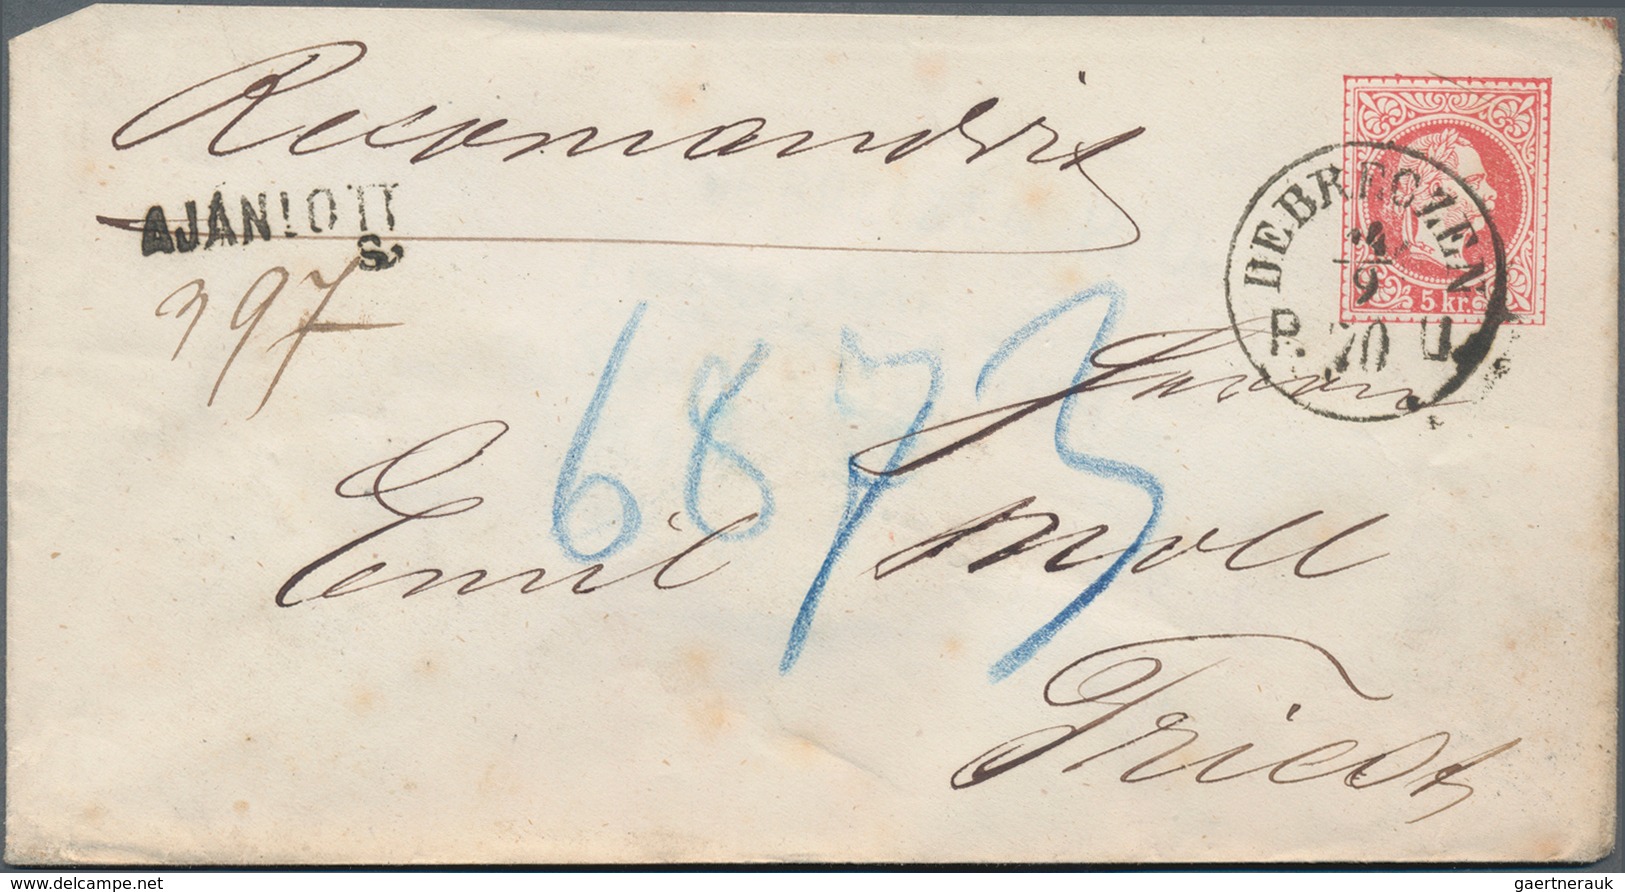 Österreich - Verwendung in Ungarn: 1868/1871, Korrespondenz Debreczen-Triest, Partie von zehn gebrau